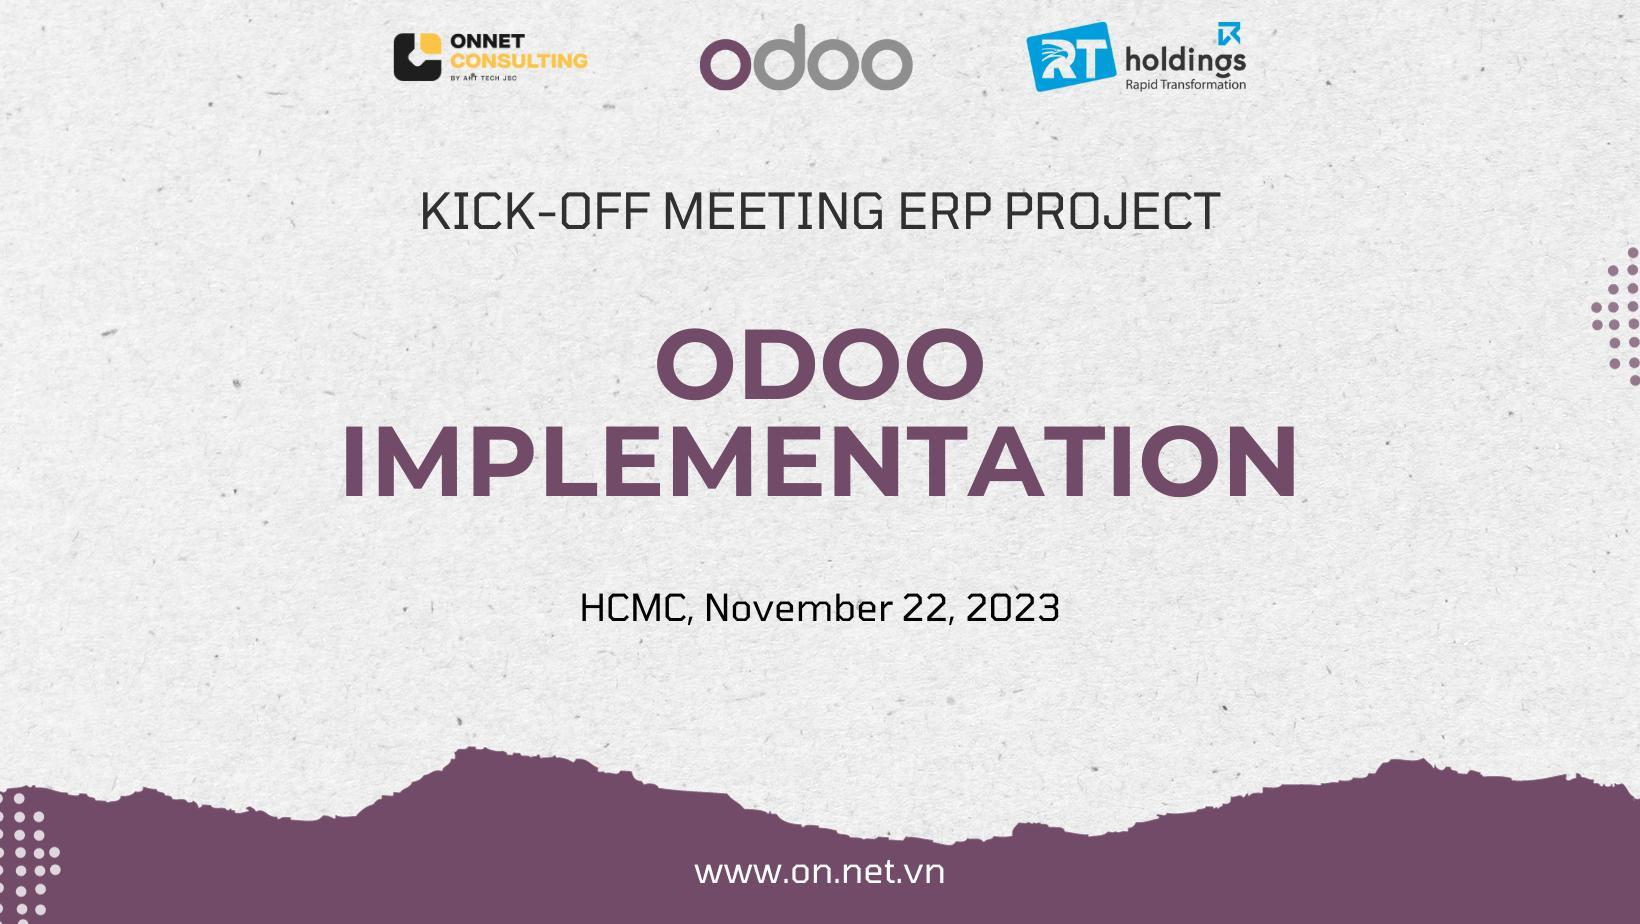 Kick-off dự án Odoo tại RT Holdings